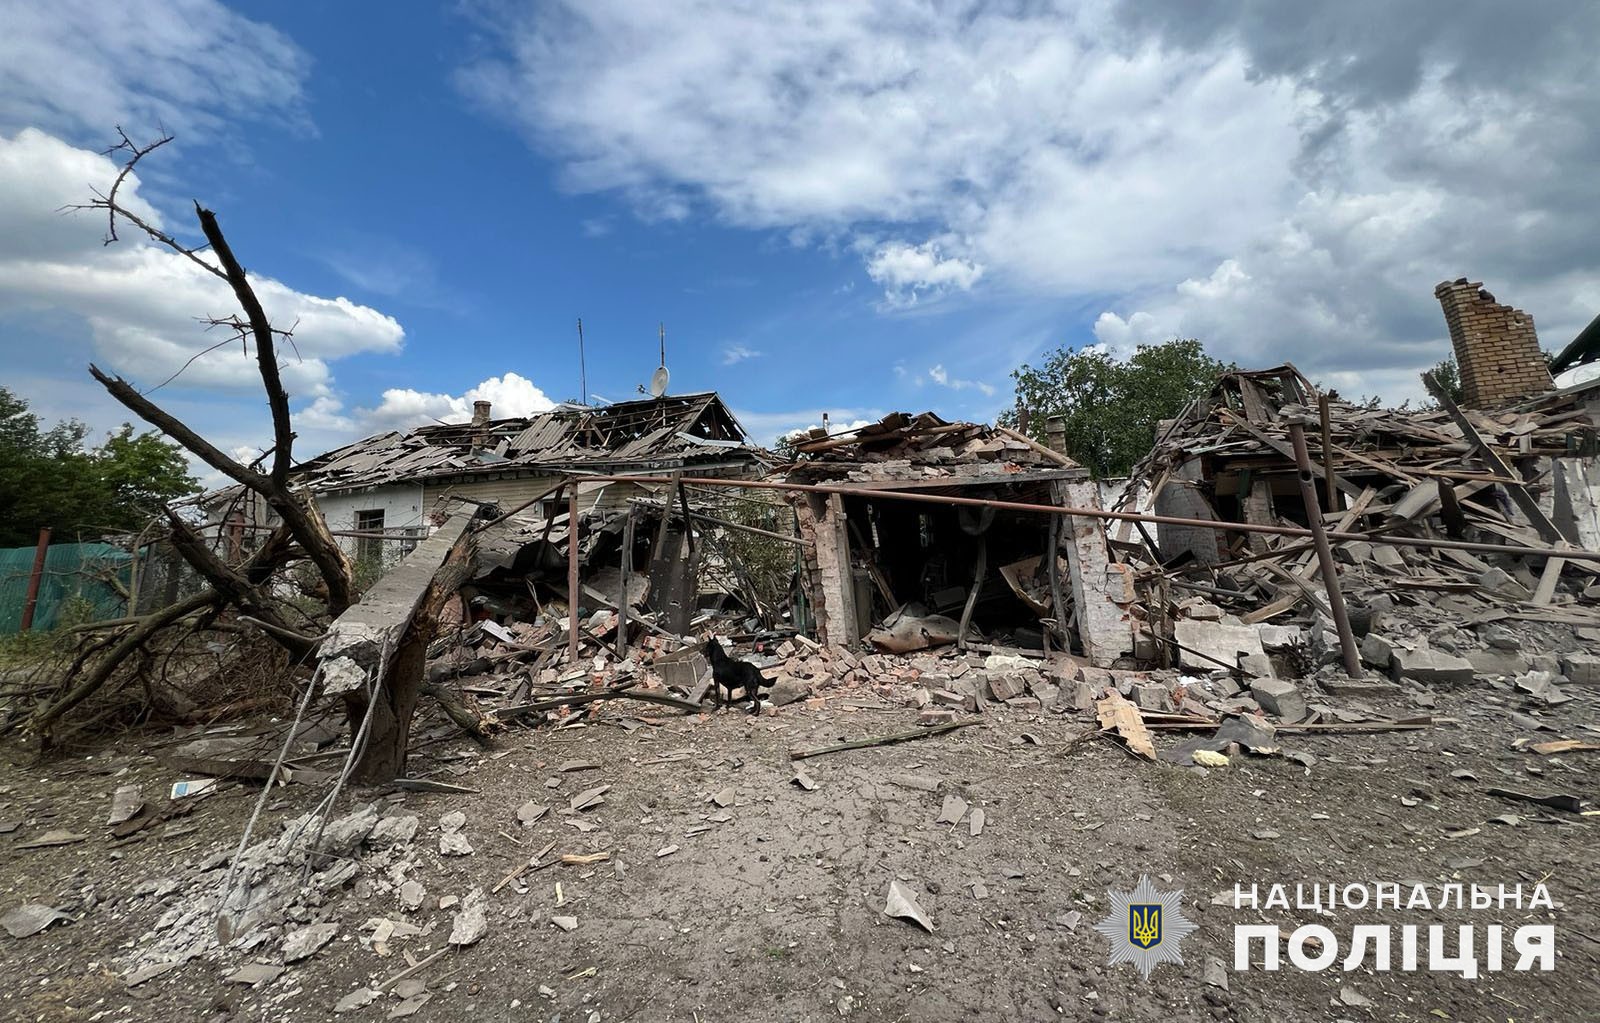 Один погибший человек и 14 раненых: захватчики продолжают бить по Донецкой области. Как прошло 26 июня в регионе (СВОДКА, ФОТО) 1